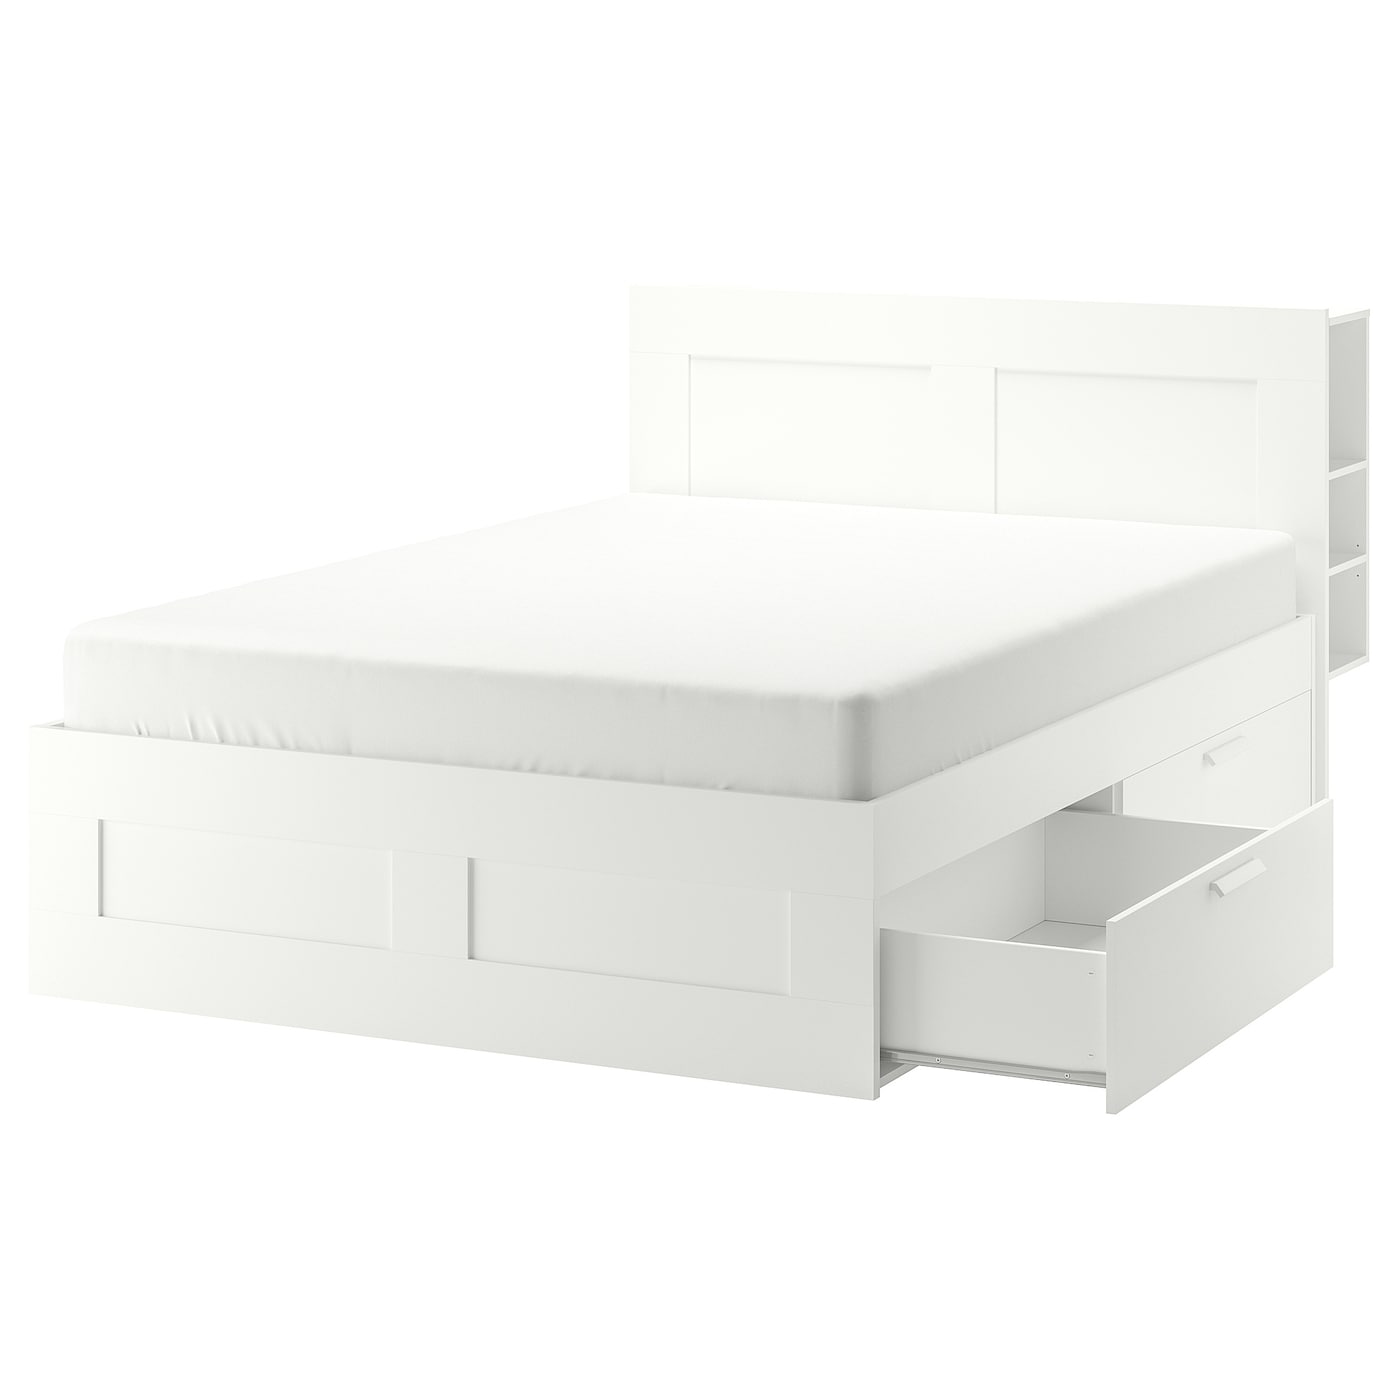 Каркас кровати с ящиком для хранения - IKEA BRIMNES, 200х140 см, белый, БРИМНЕС ИКЕА